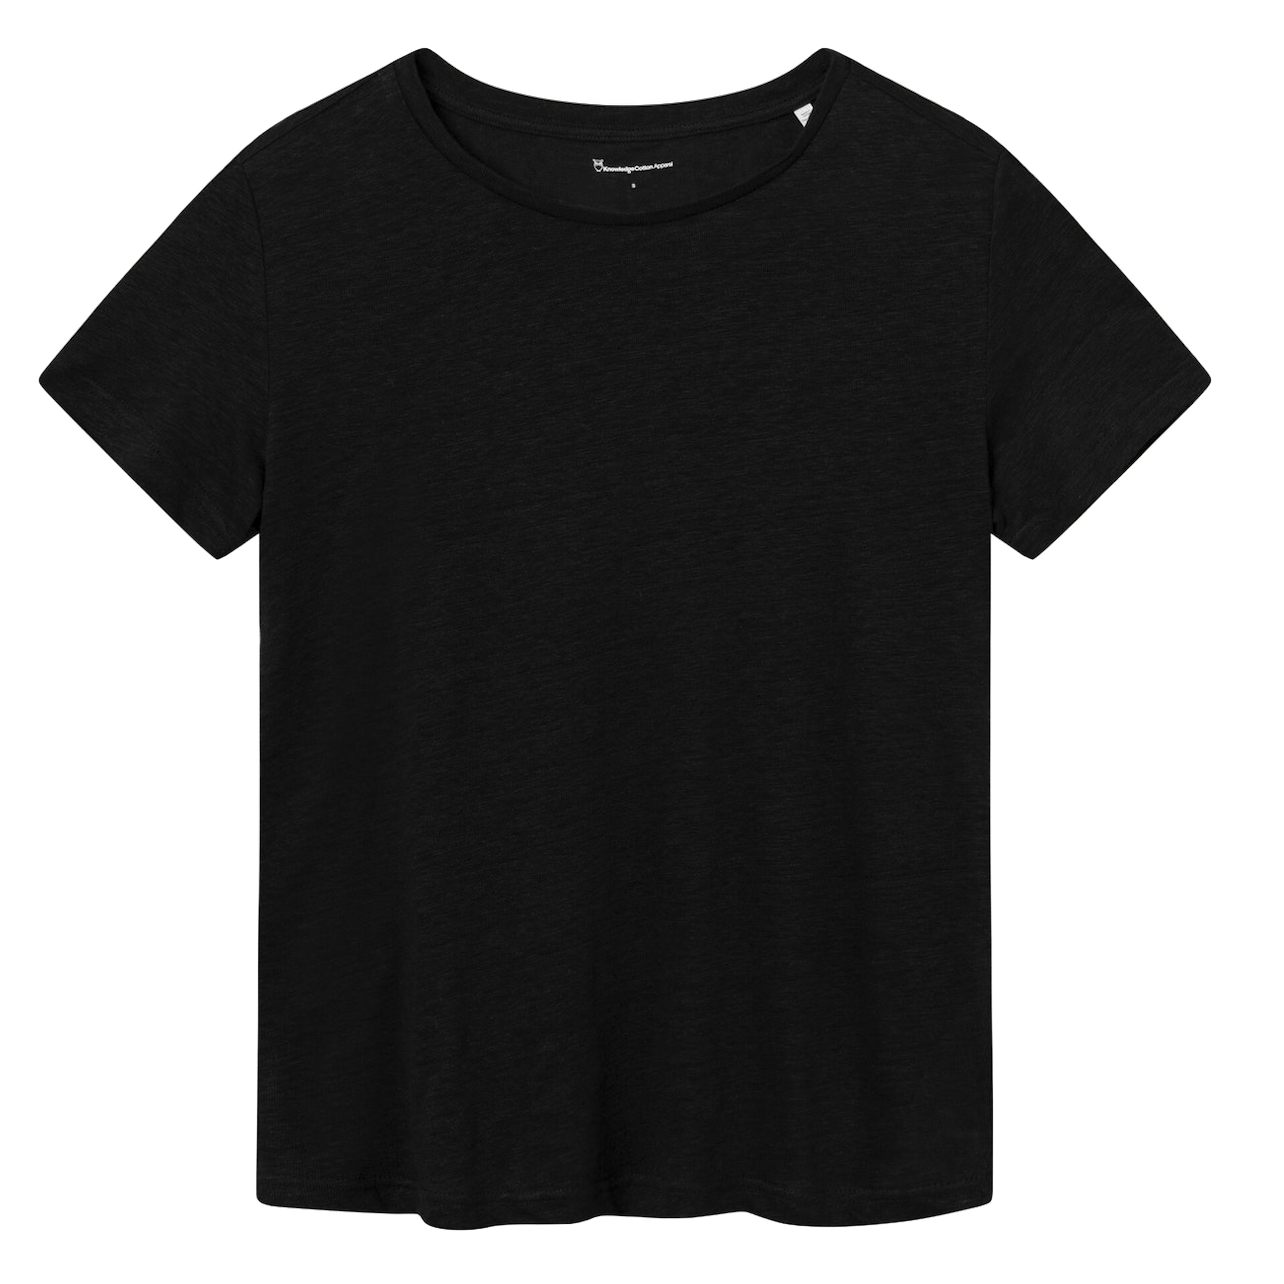 KnowledgeCotton Apparel KnowledgeCotton, Reg Linen T-Shirt, jet black, M